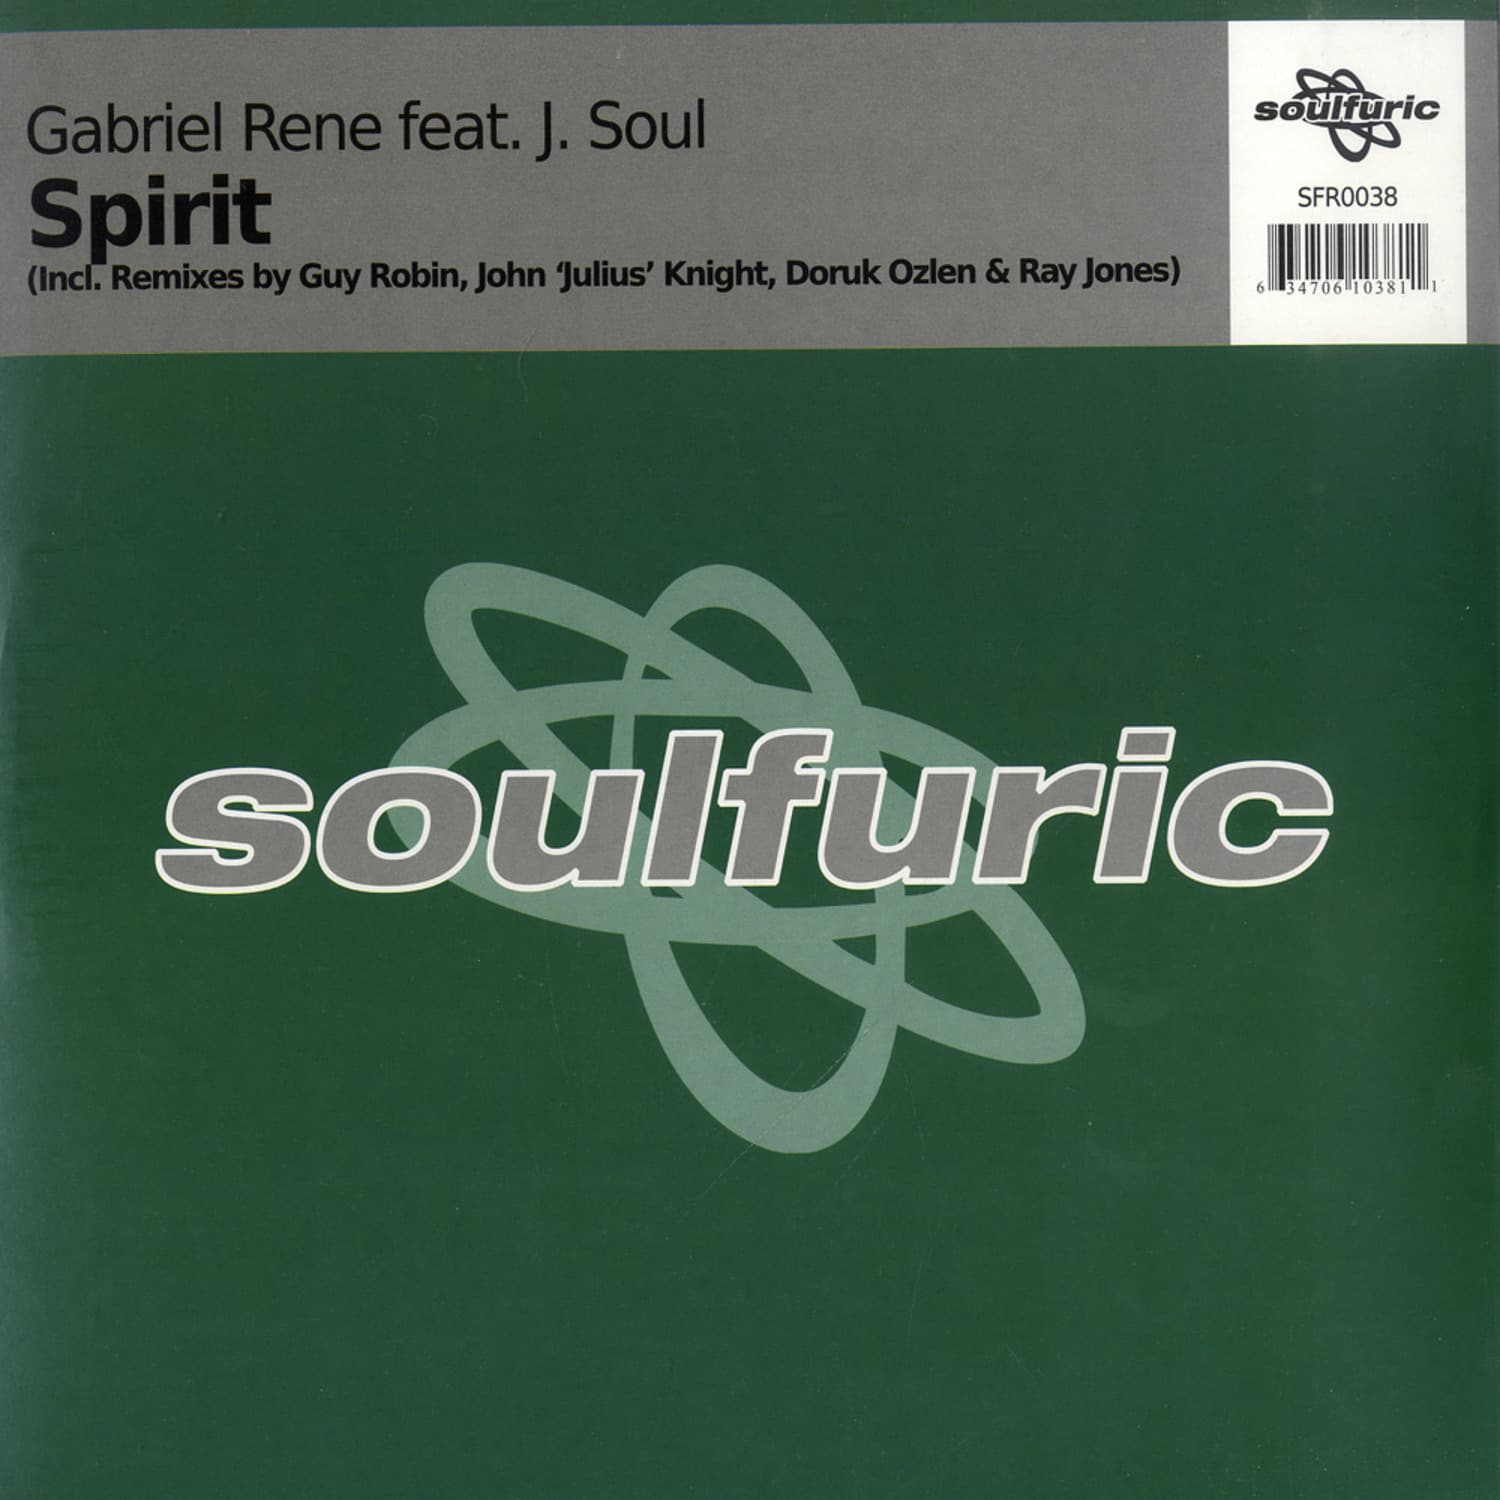 Gabriel Rene feat J Soul - SPIRIT